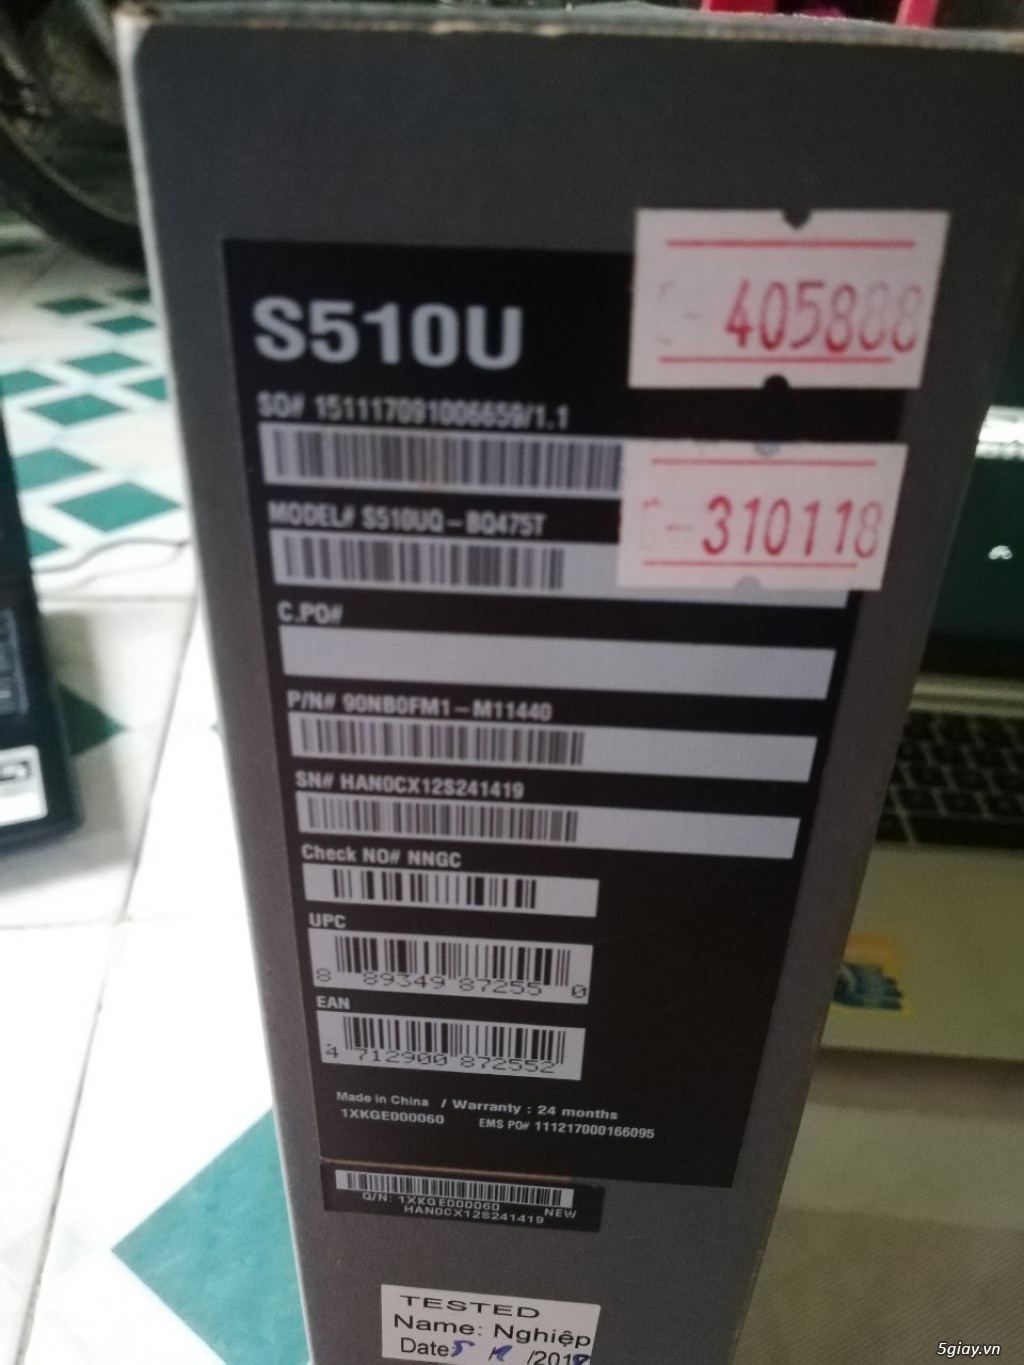 Bán Asus Vivobook S510UQ/i5-8250U/4G/1T/GT940MX 2G Mới 11.8TR - 2